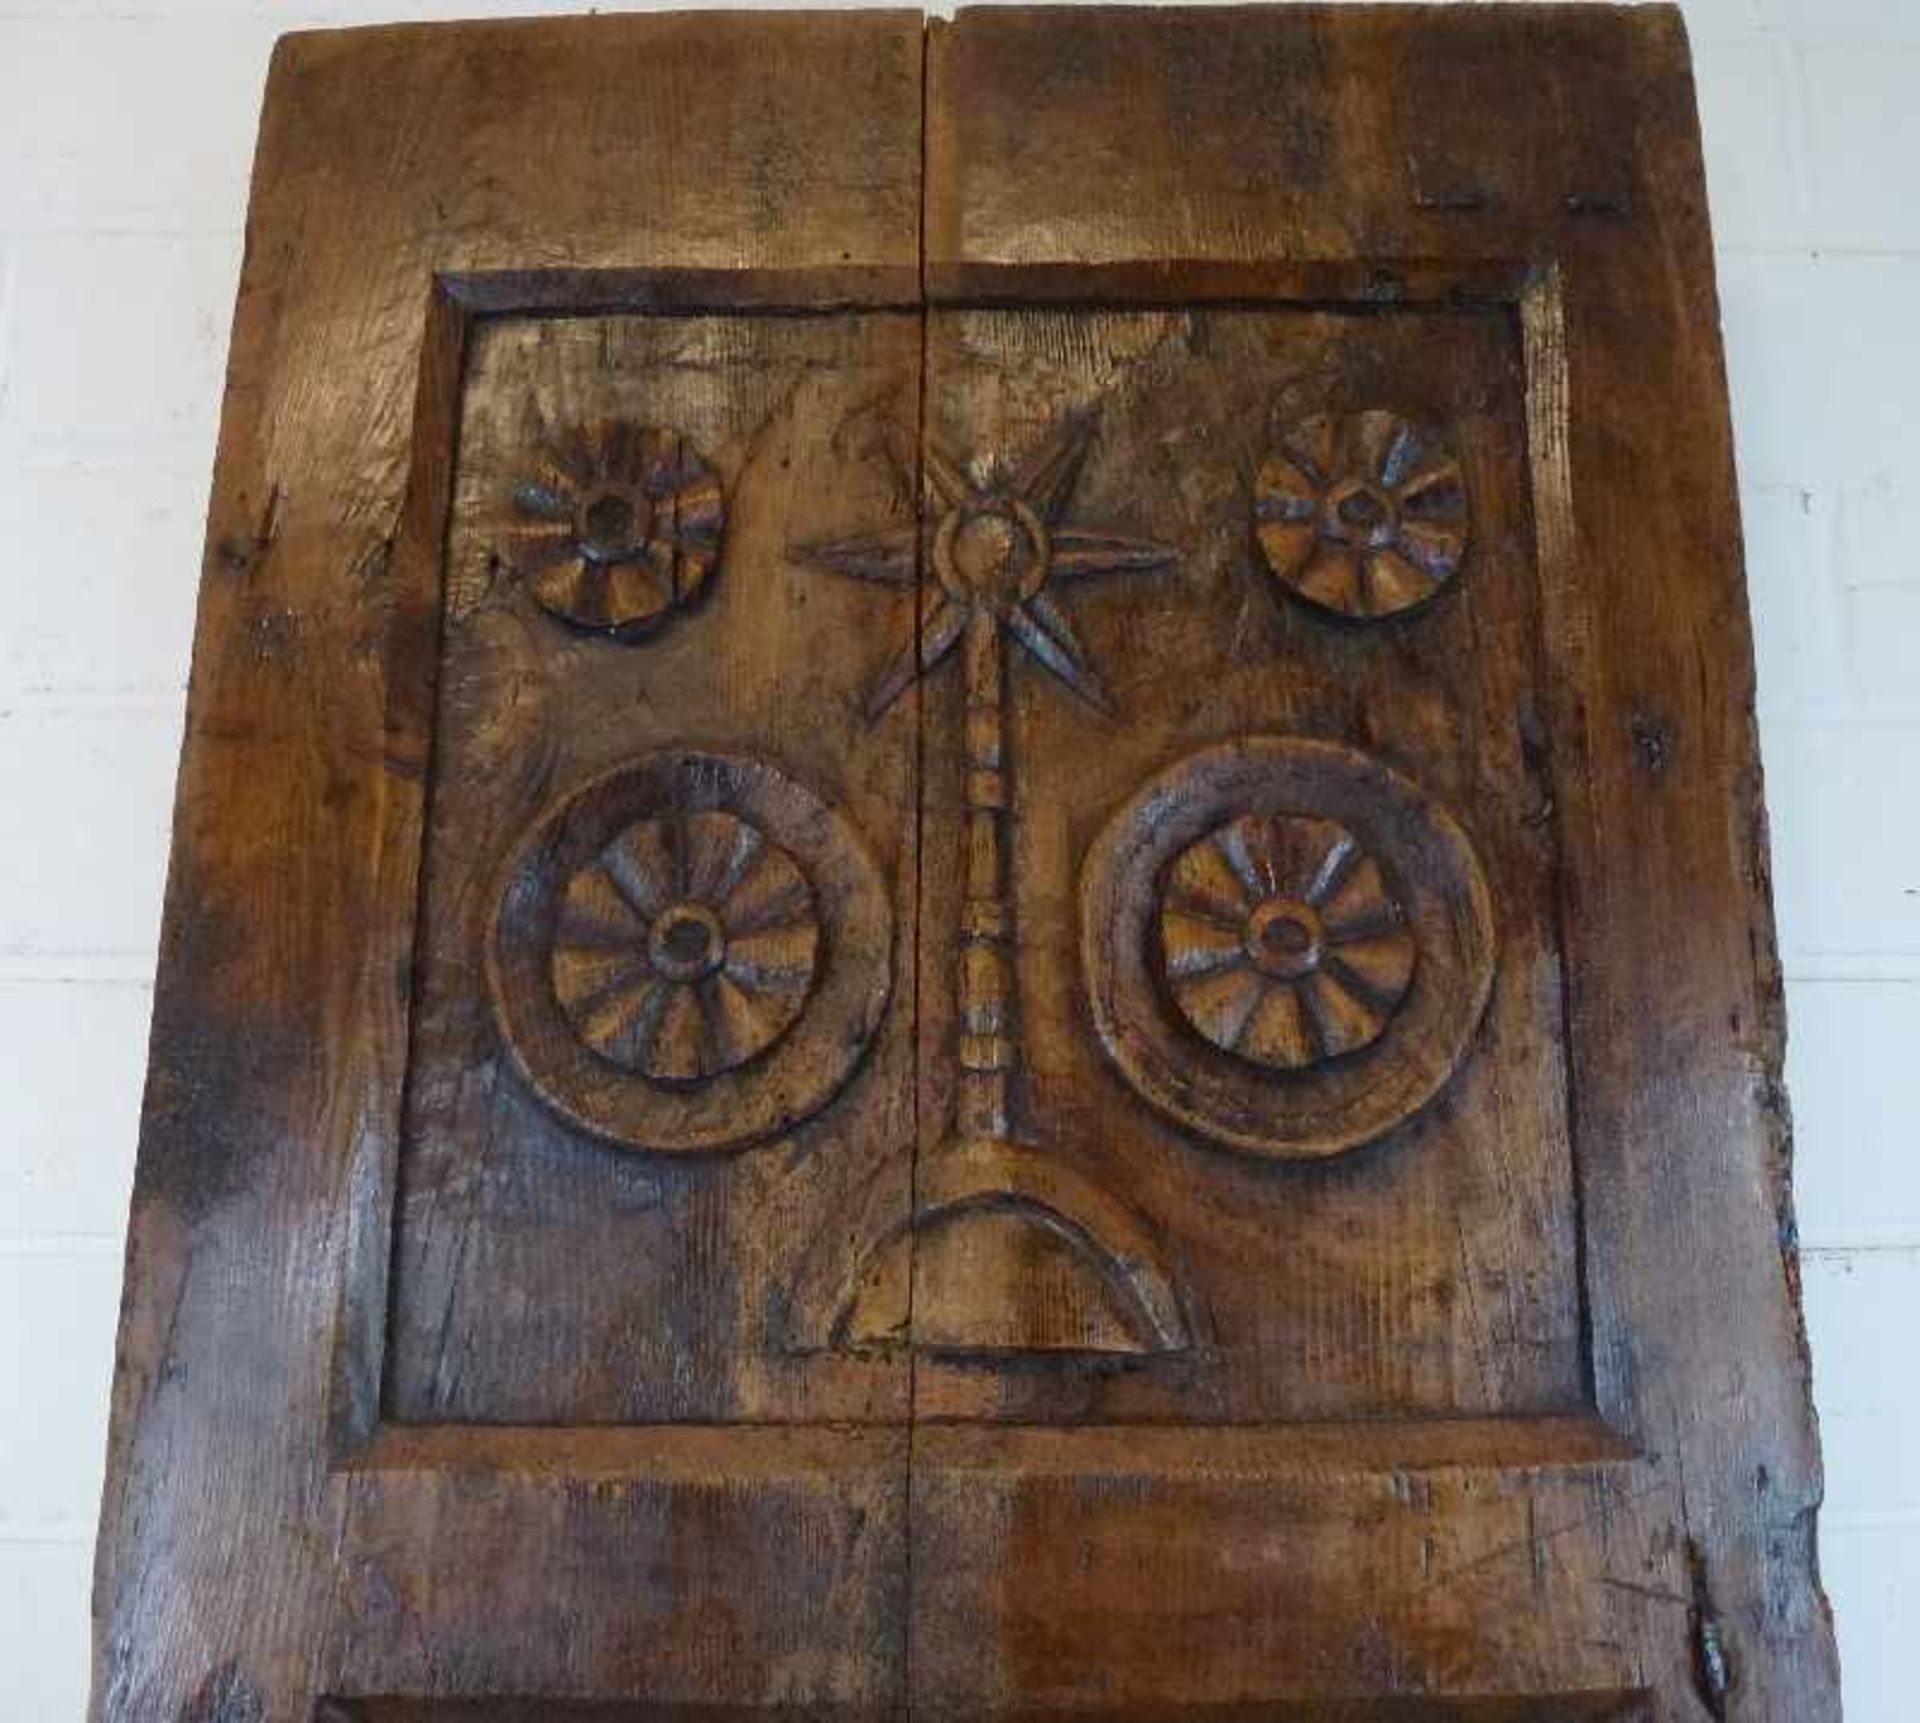 Maurischer Türflügel, 19.Jh. Eiche geschnitzt, 3 Füllungen, Vasenmotiv, Sonnen- u. Stern-Symbole, - Bild 2 aus 5